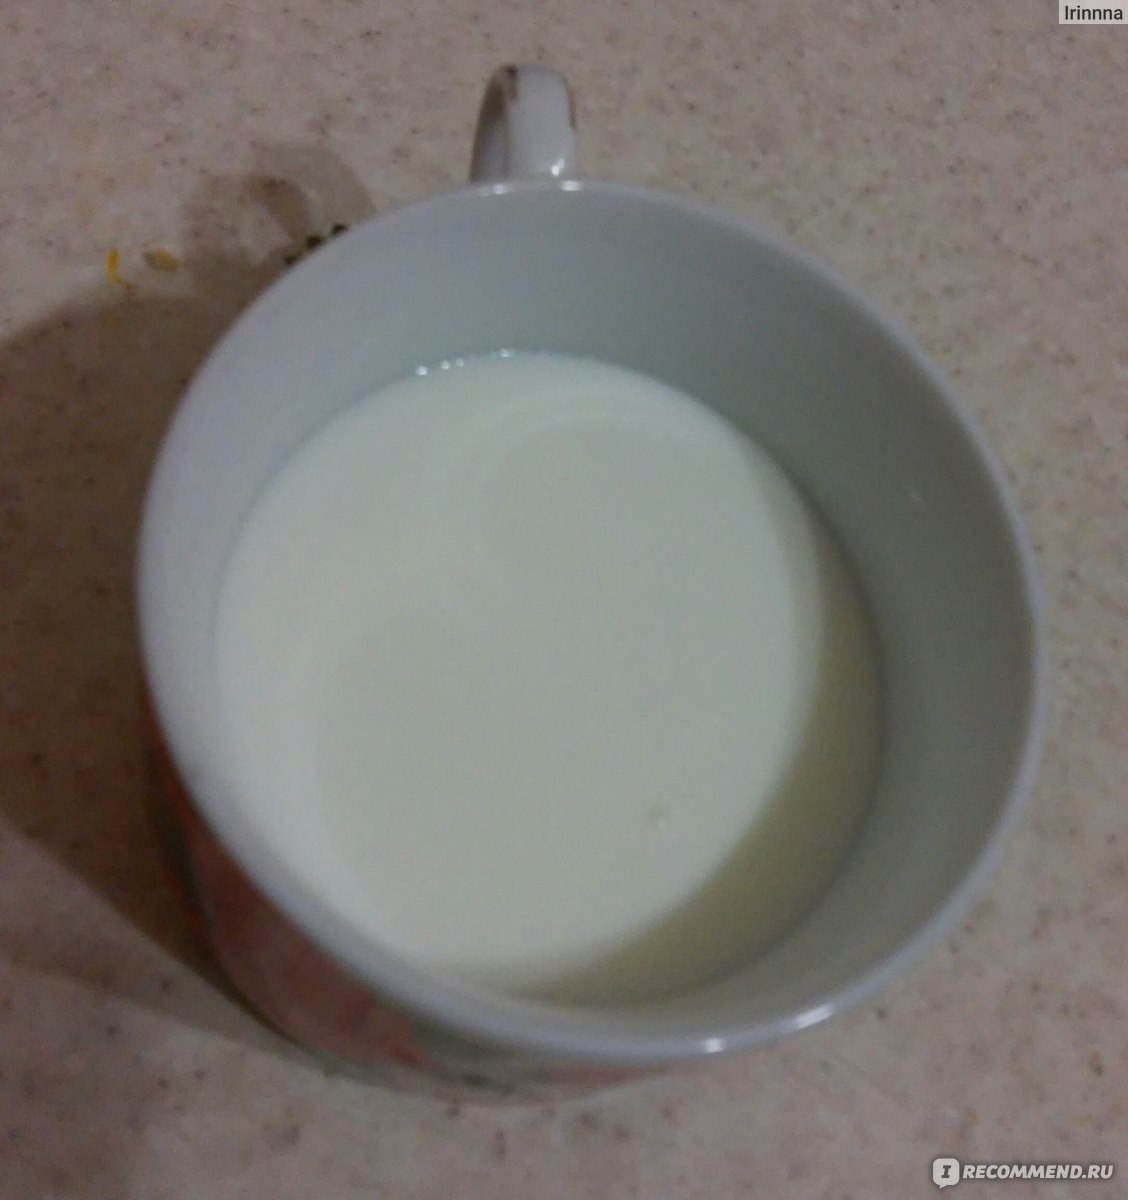 Йогурт белого цвета, жидкий. Без ароматизаторов. 